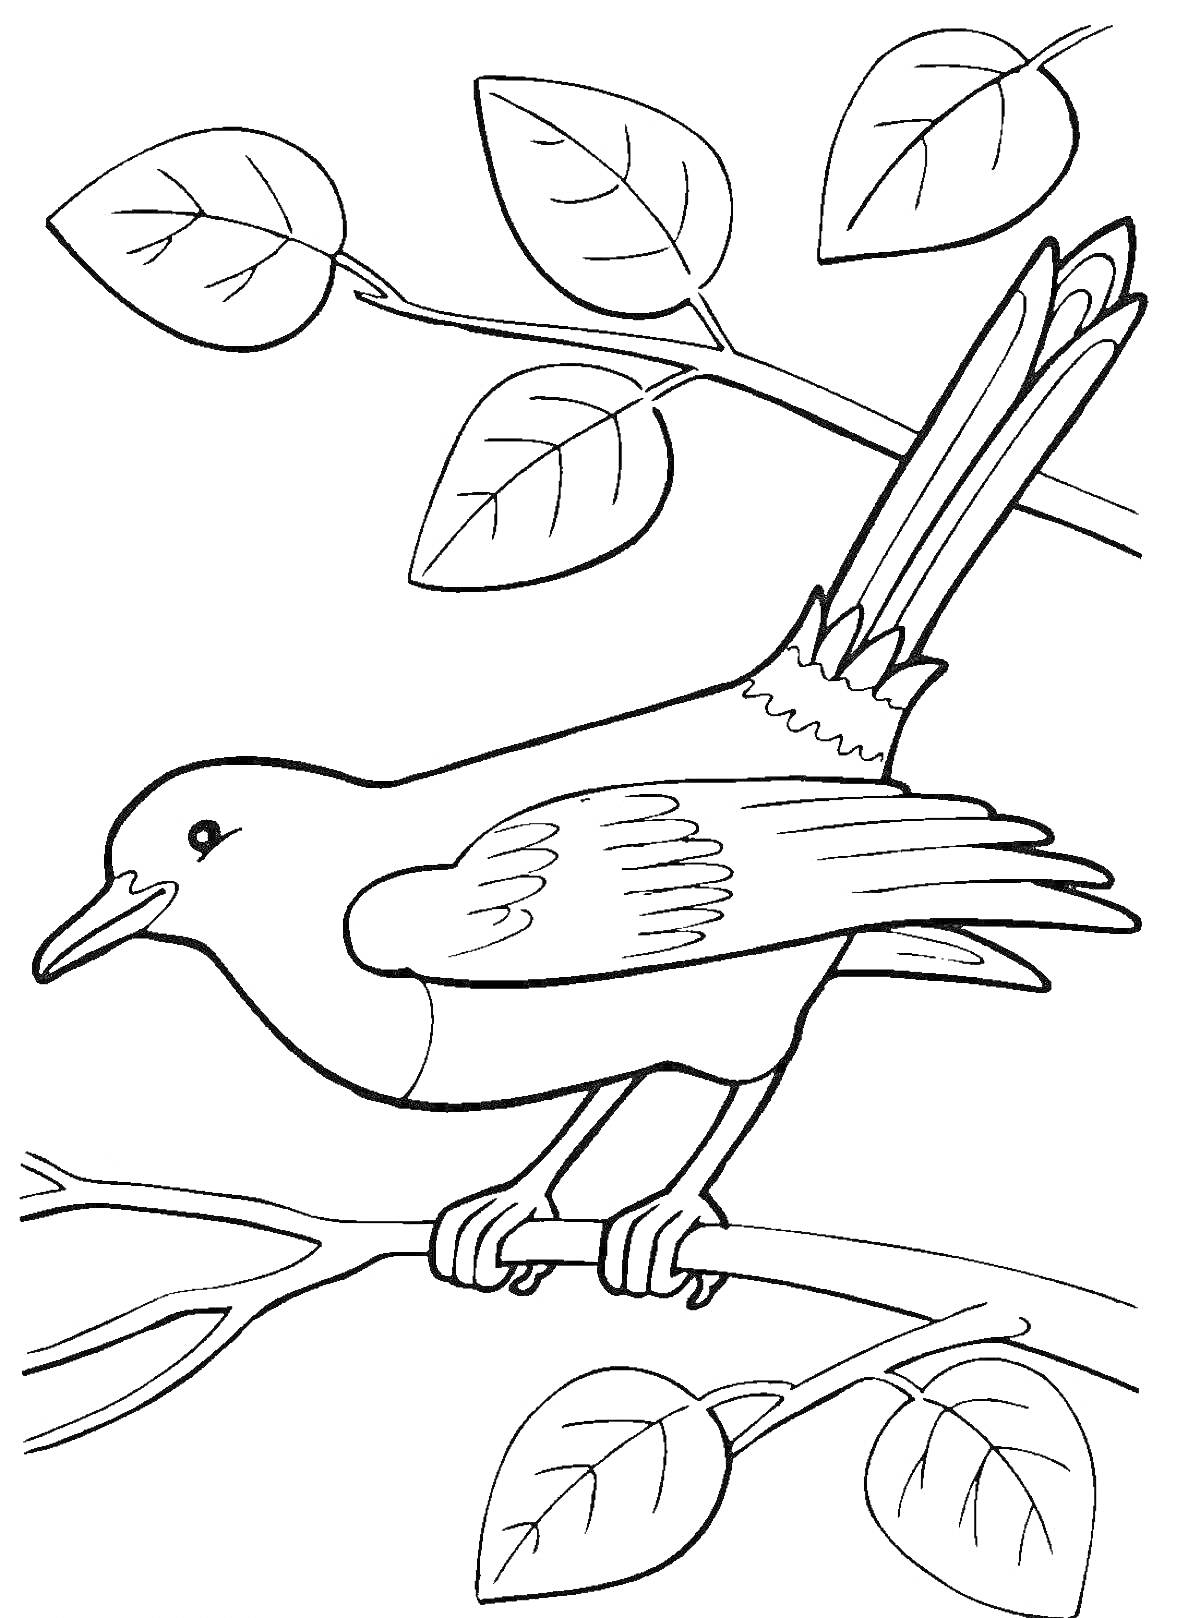 Раскраска Птица на ветке с листьями